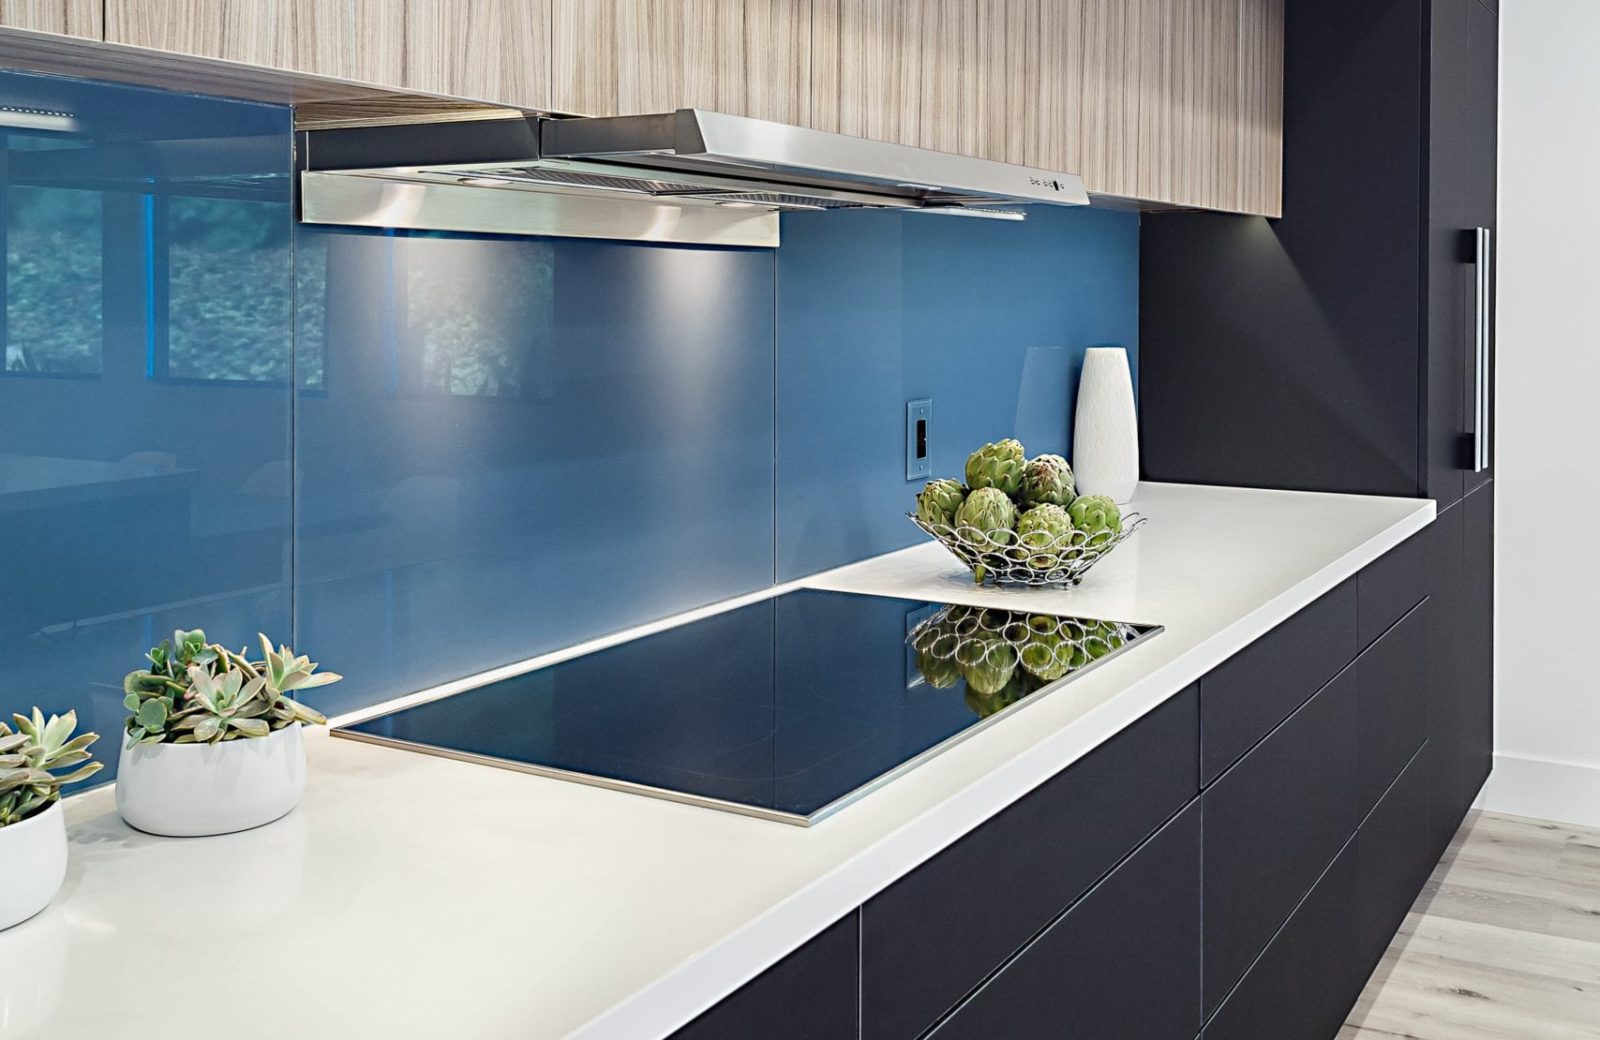 Blue Soda Glass Backsplash in after kitchen remodel picture